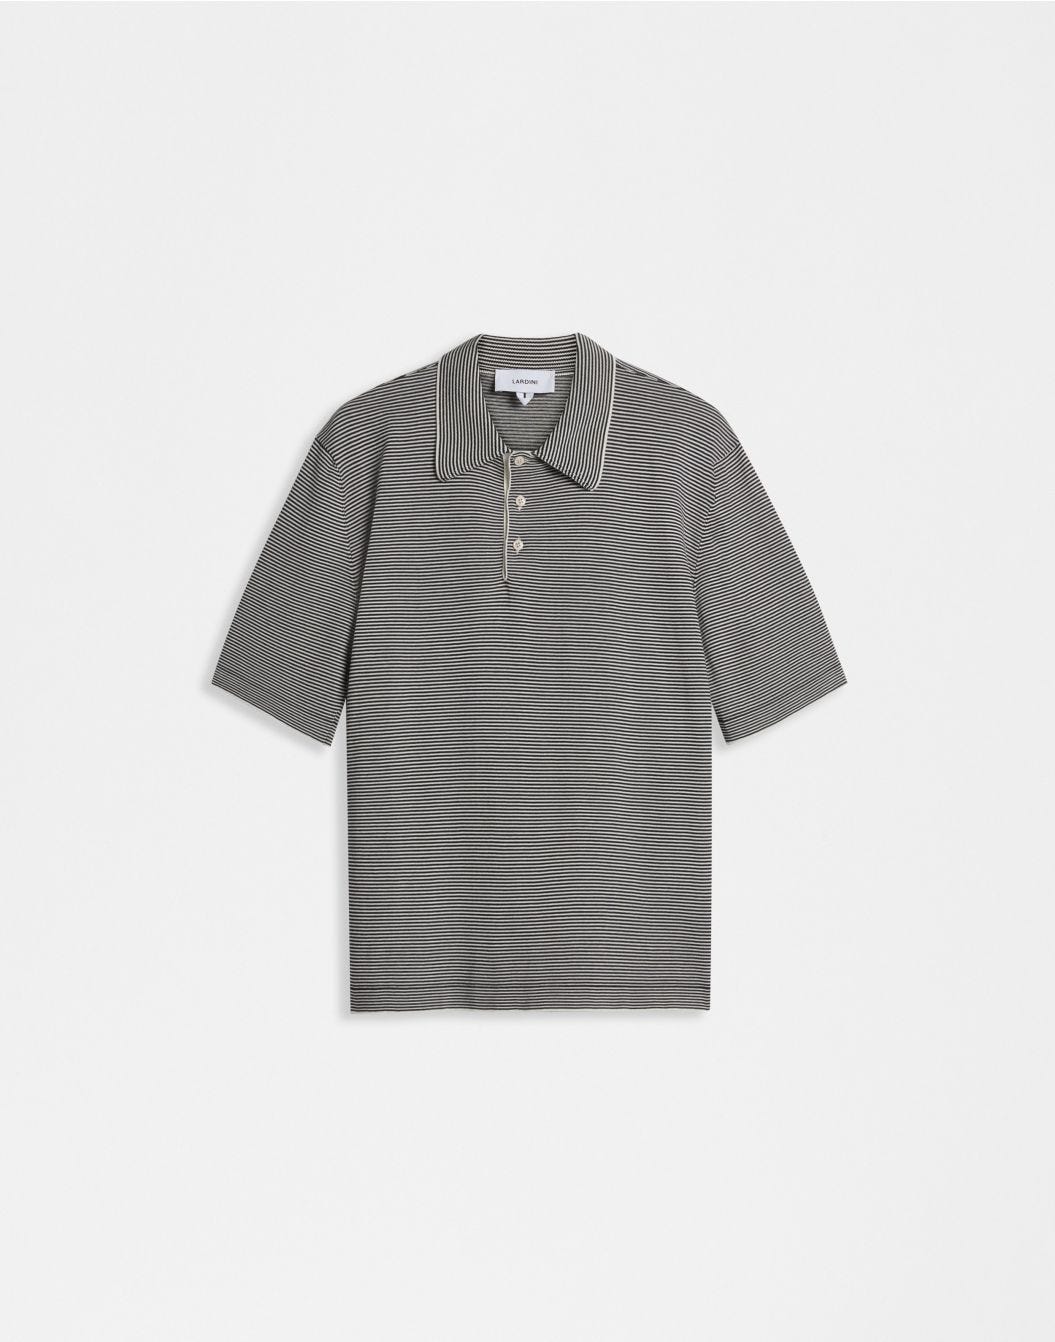 Two-tone jacquard cotton crêpe polo shirt